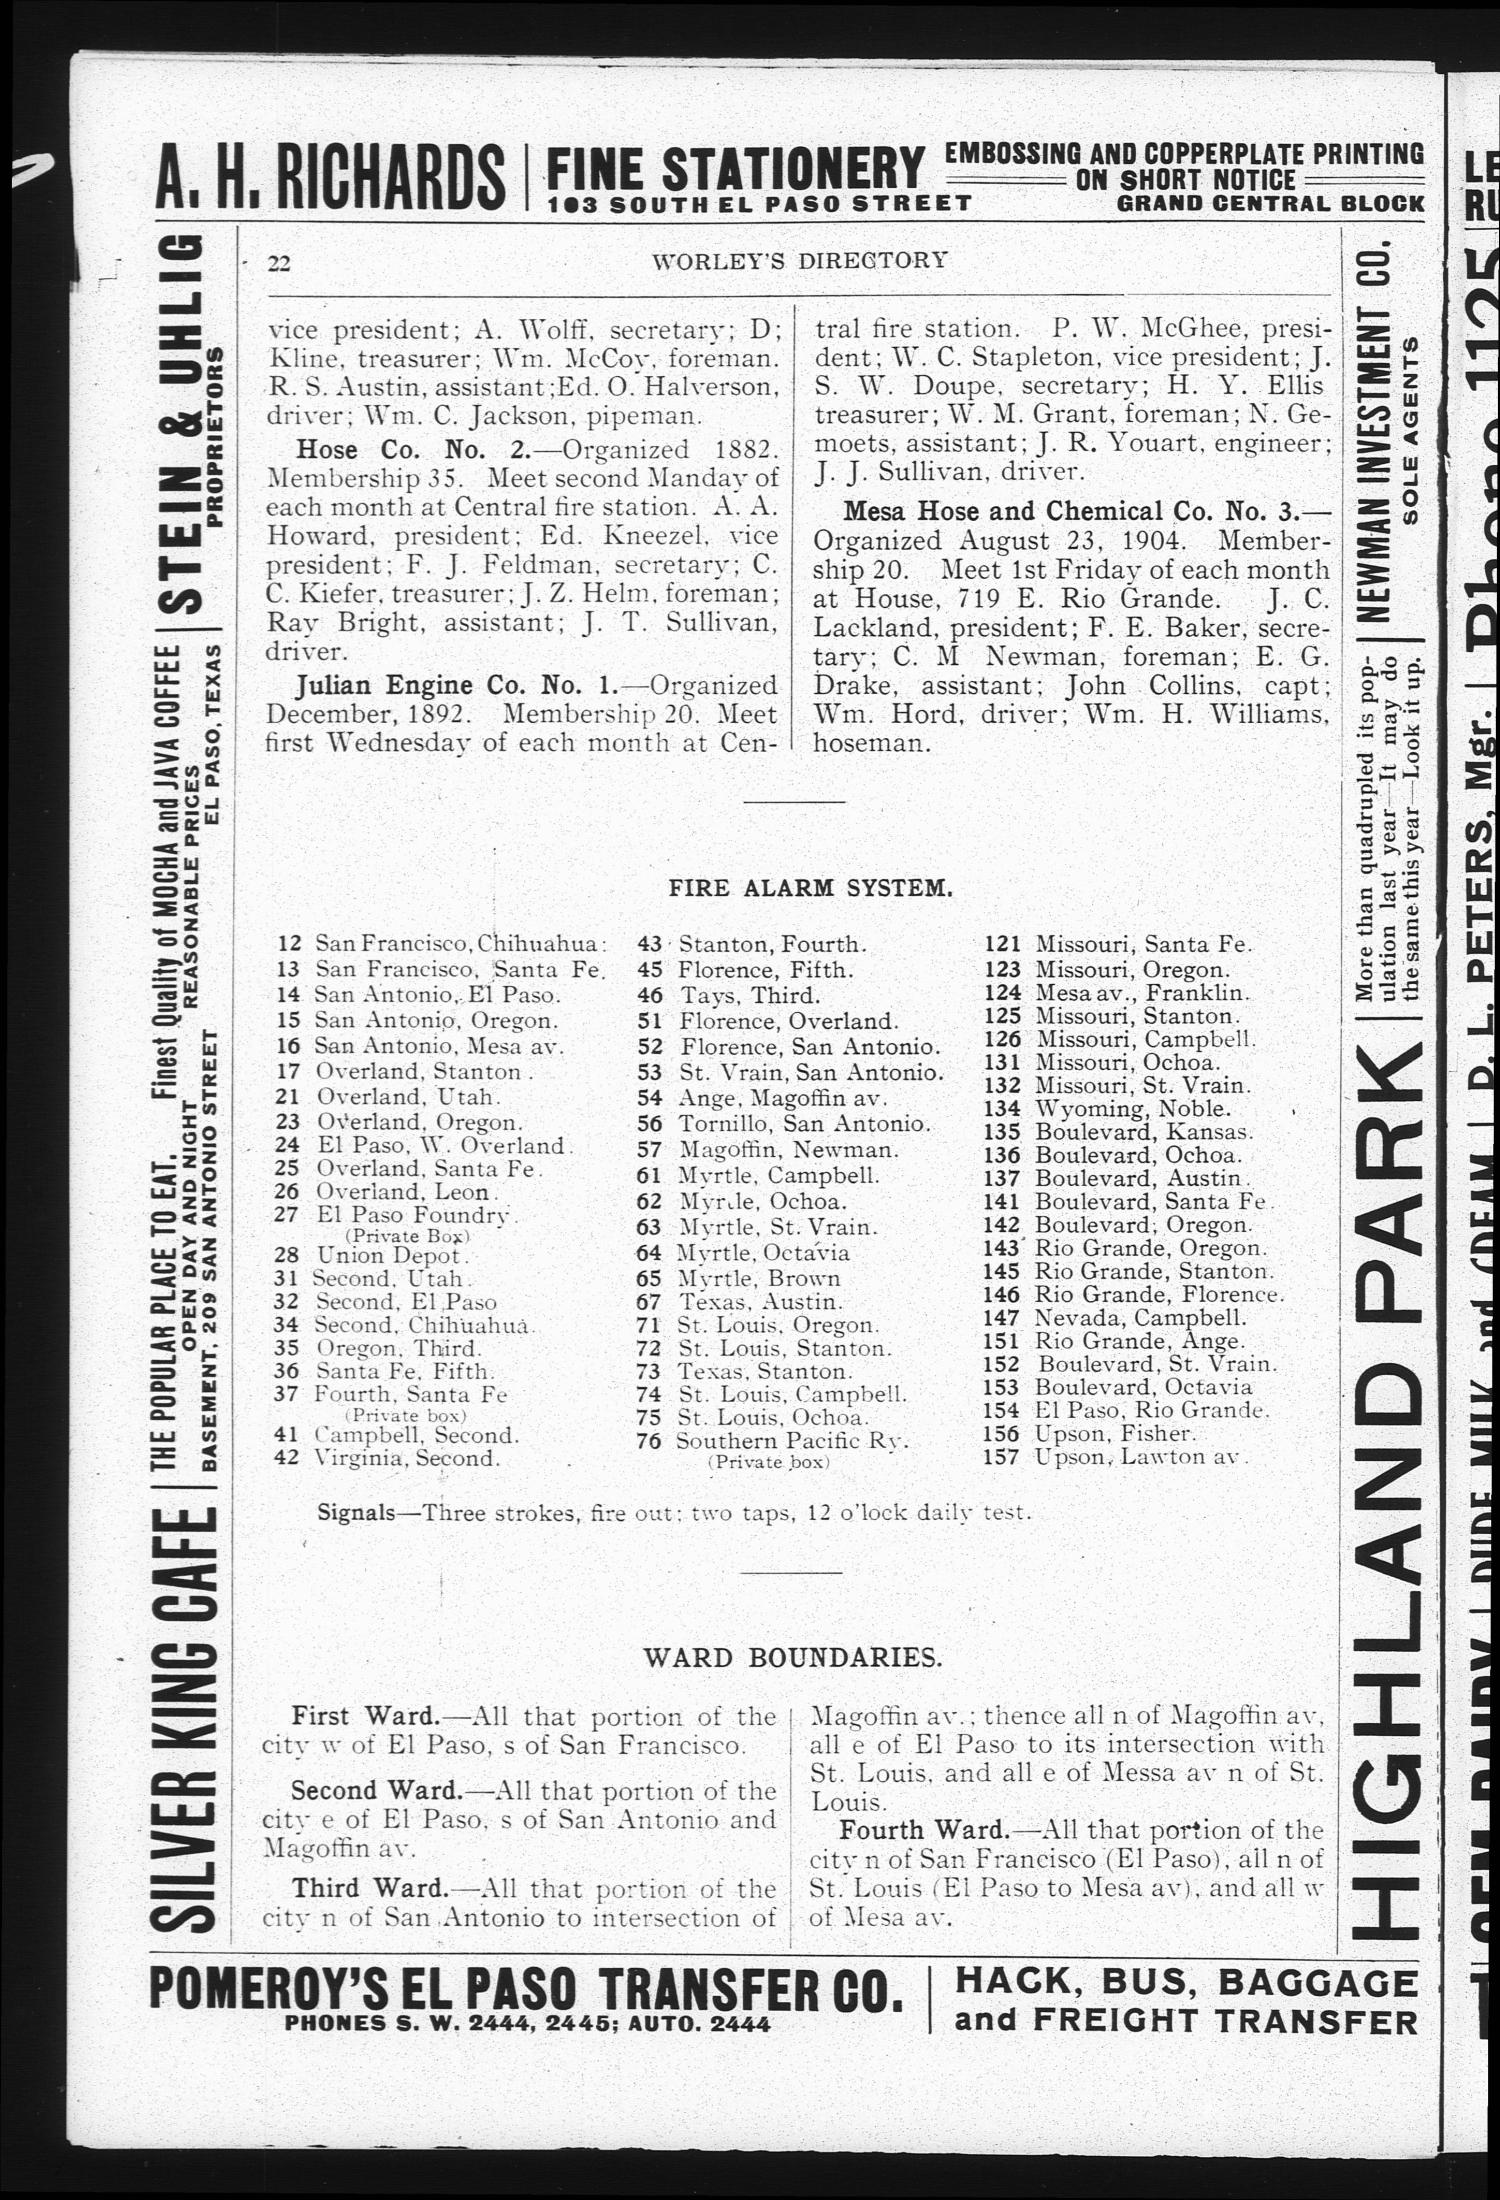 El Paso Directory for 1907
                                                
                                                    22
                                                